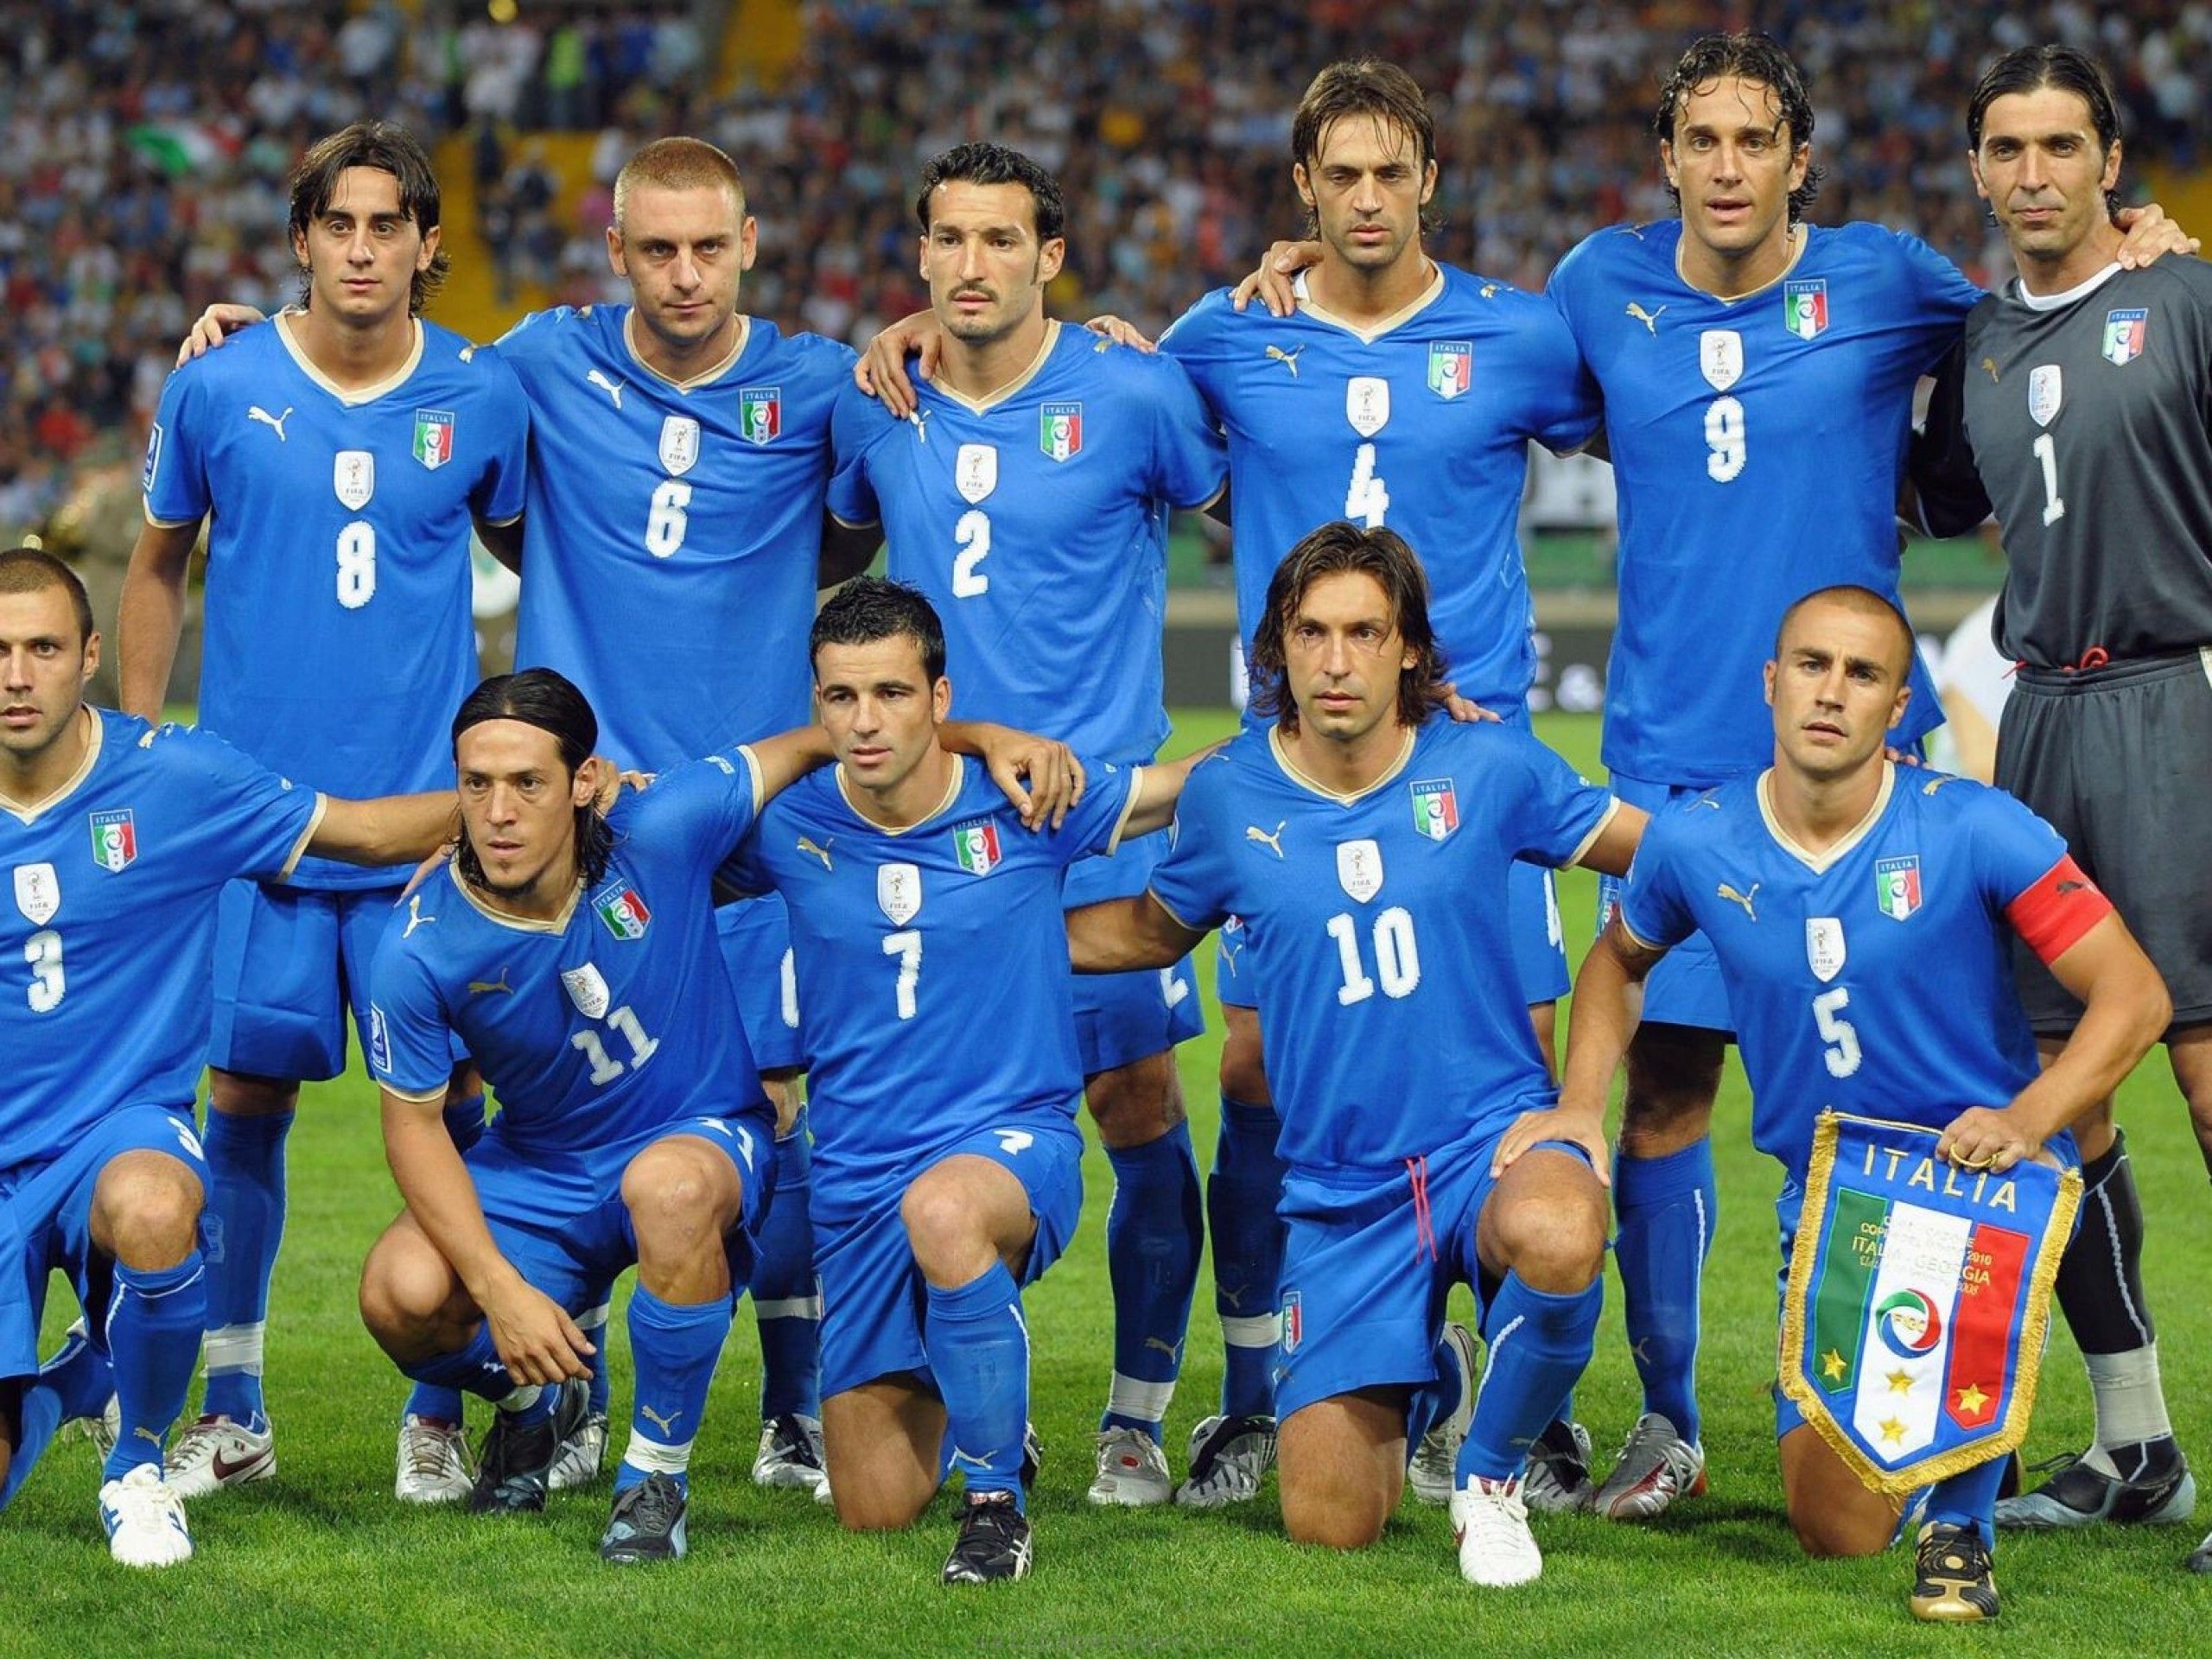 Italy Football Wallpaper Free Italy Football Background